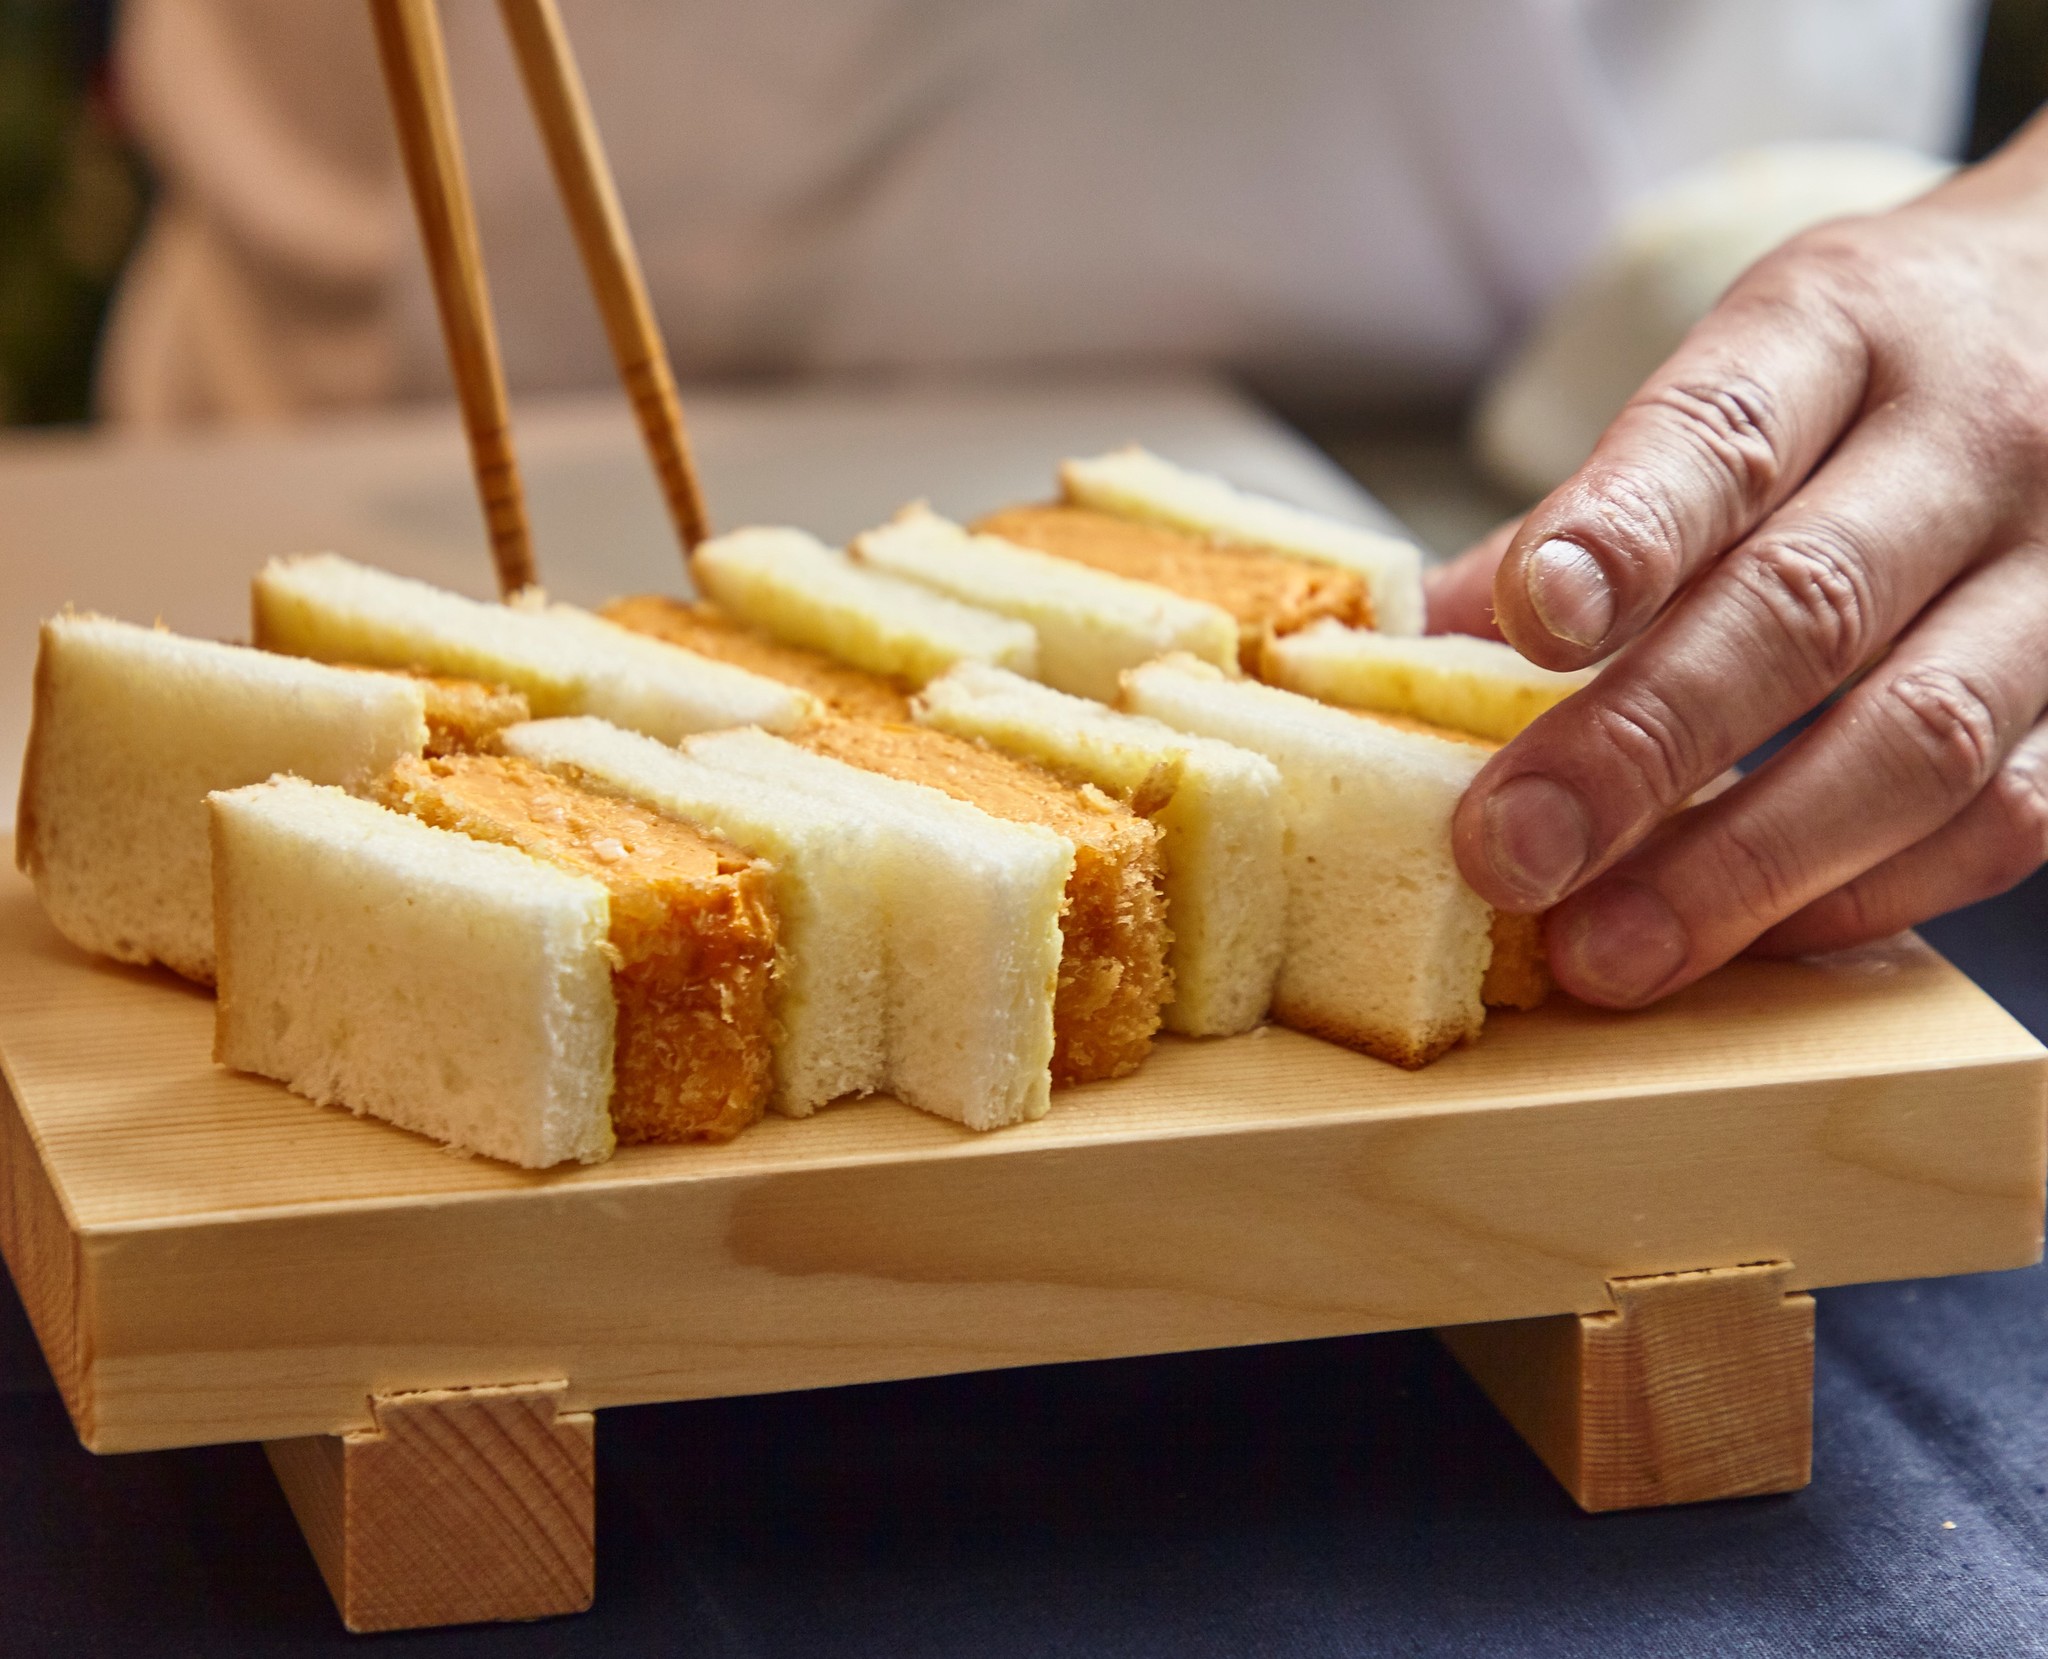 専用に開発した 高級だし食パン を使用した だし巻揚げサンド専門店が大阪 なんばcityに登場 株式会社 オペレーションファクトリーのプレスリリース